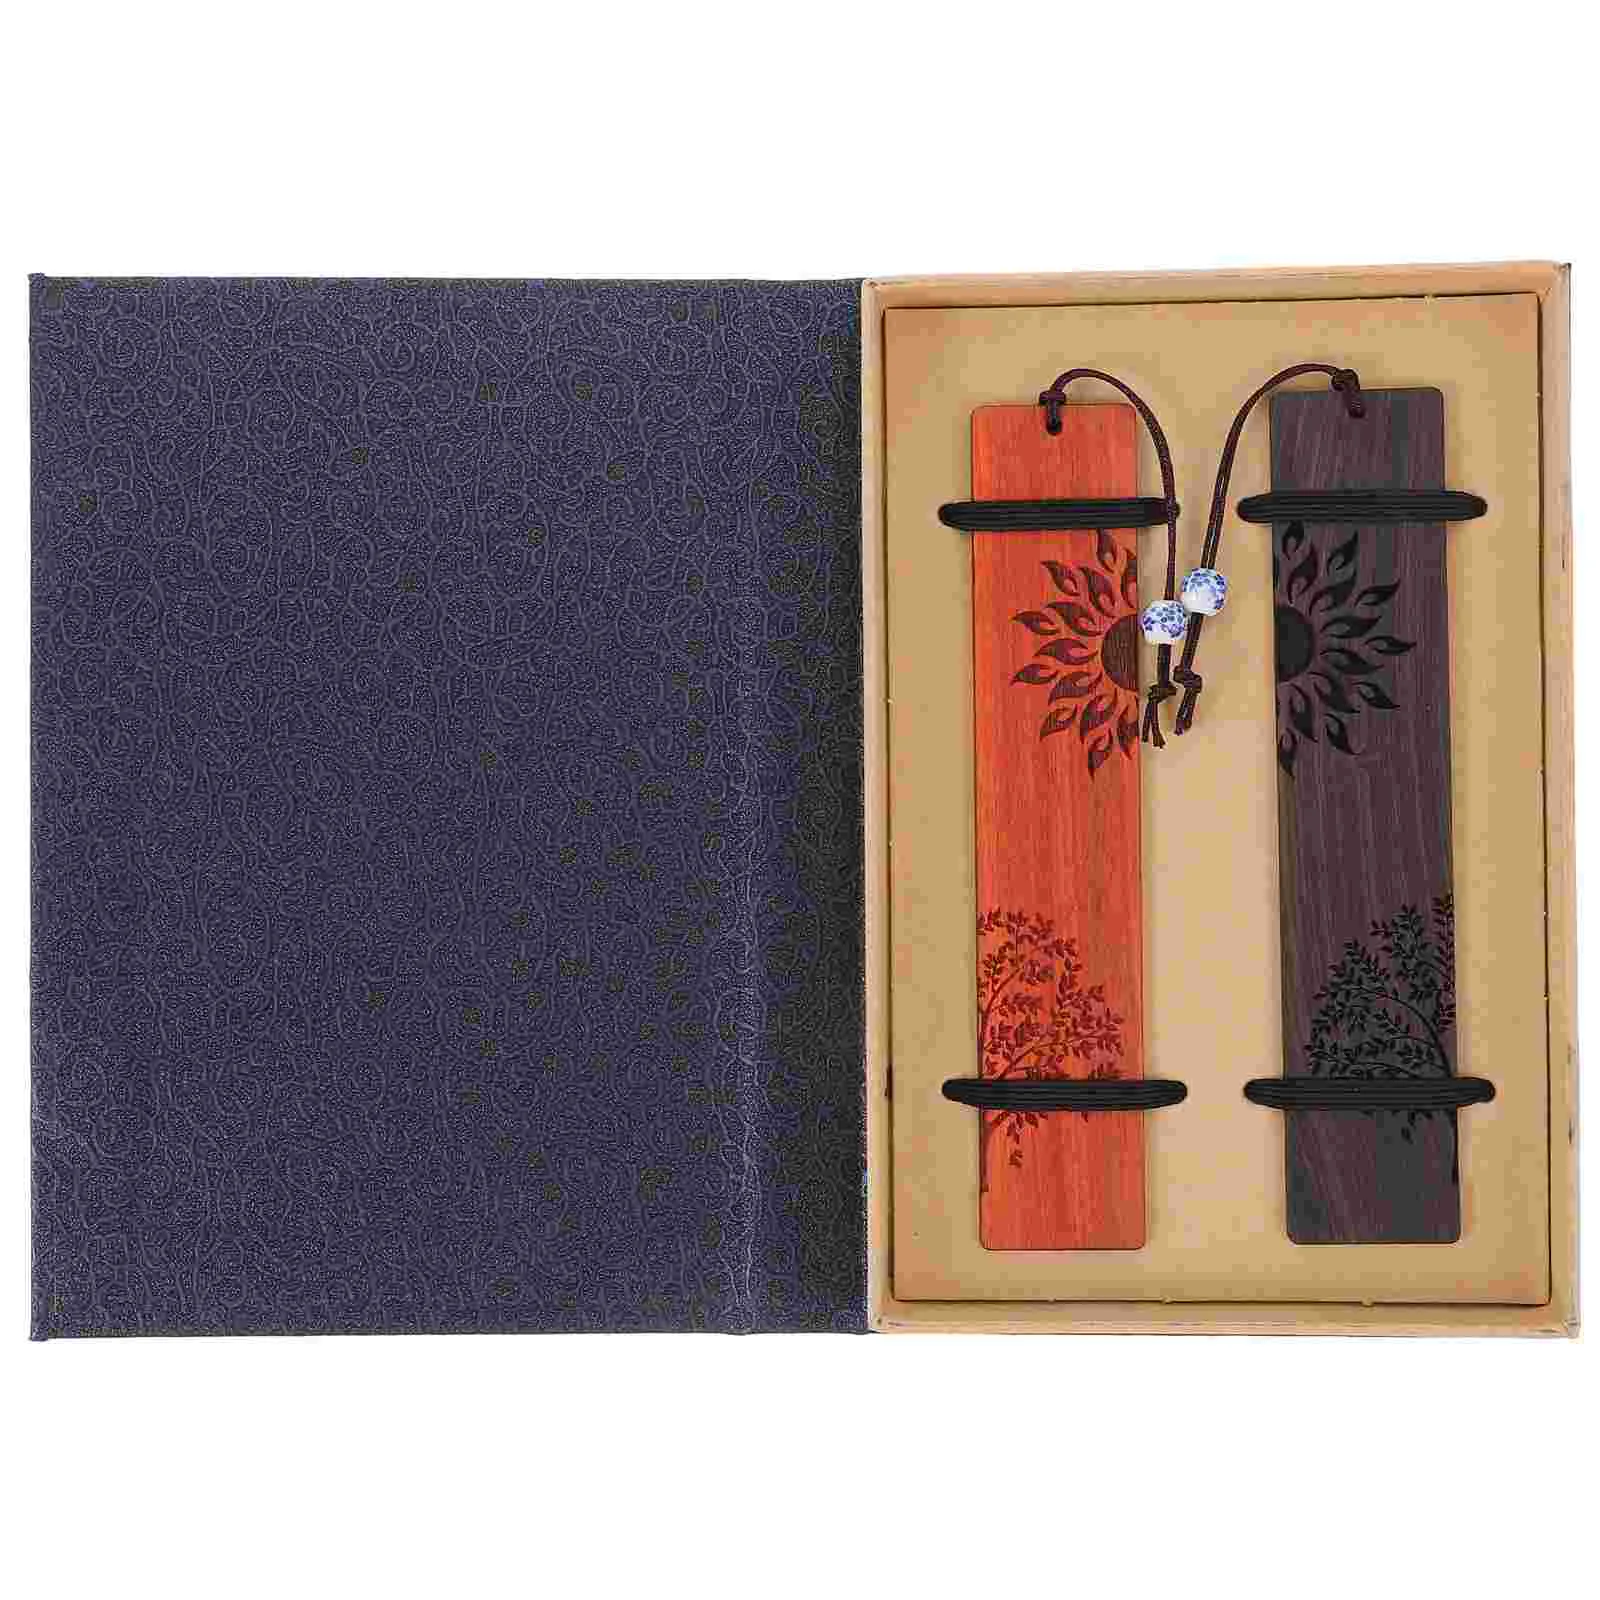 

1 Набор деревянных закладок, уникальная Закладка, подарок в китайском стиле, печать, Закладка для книг, маркер для чтения